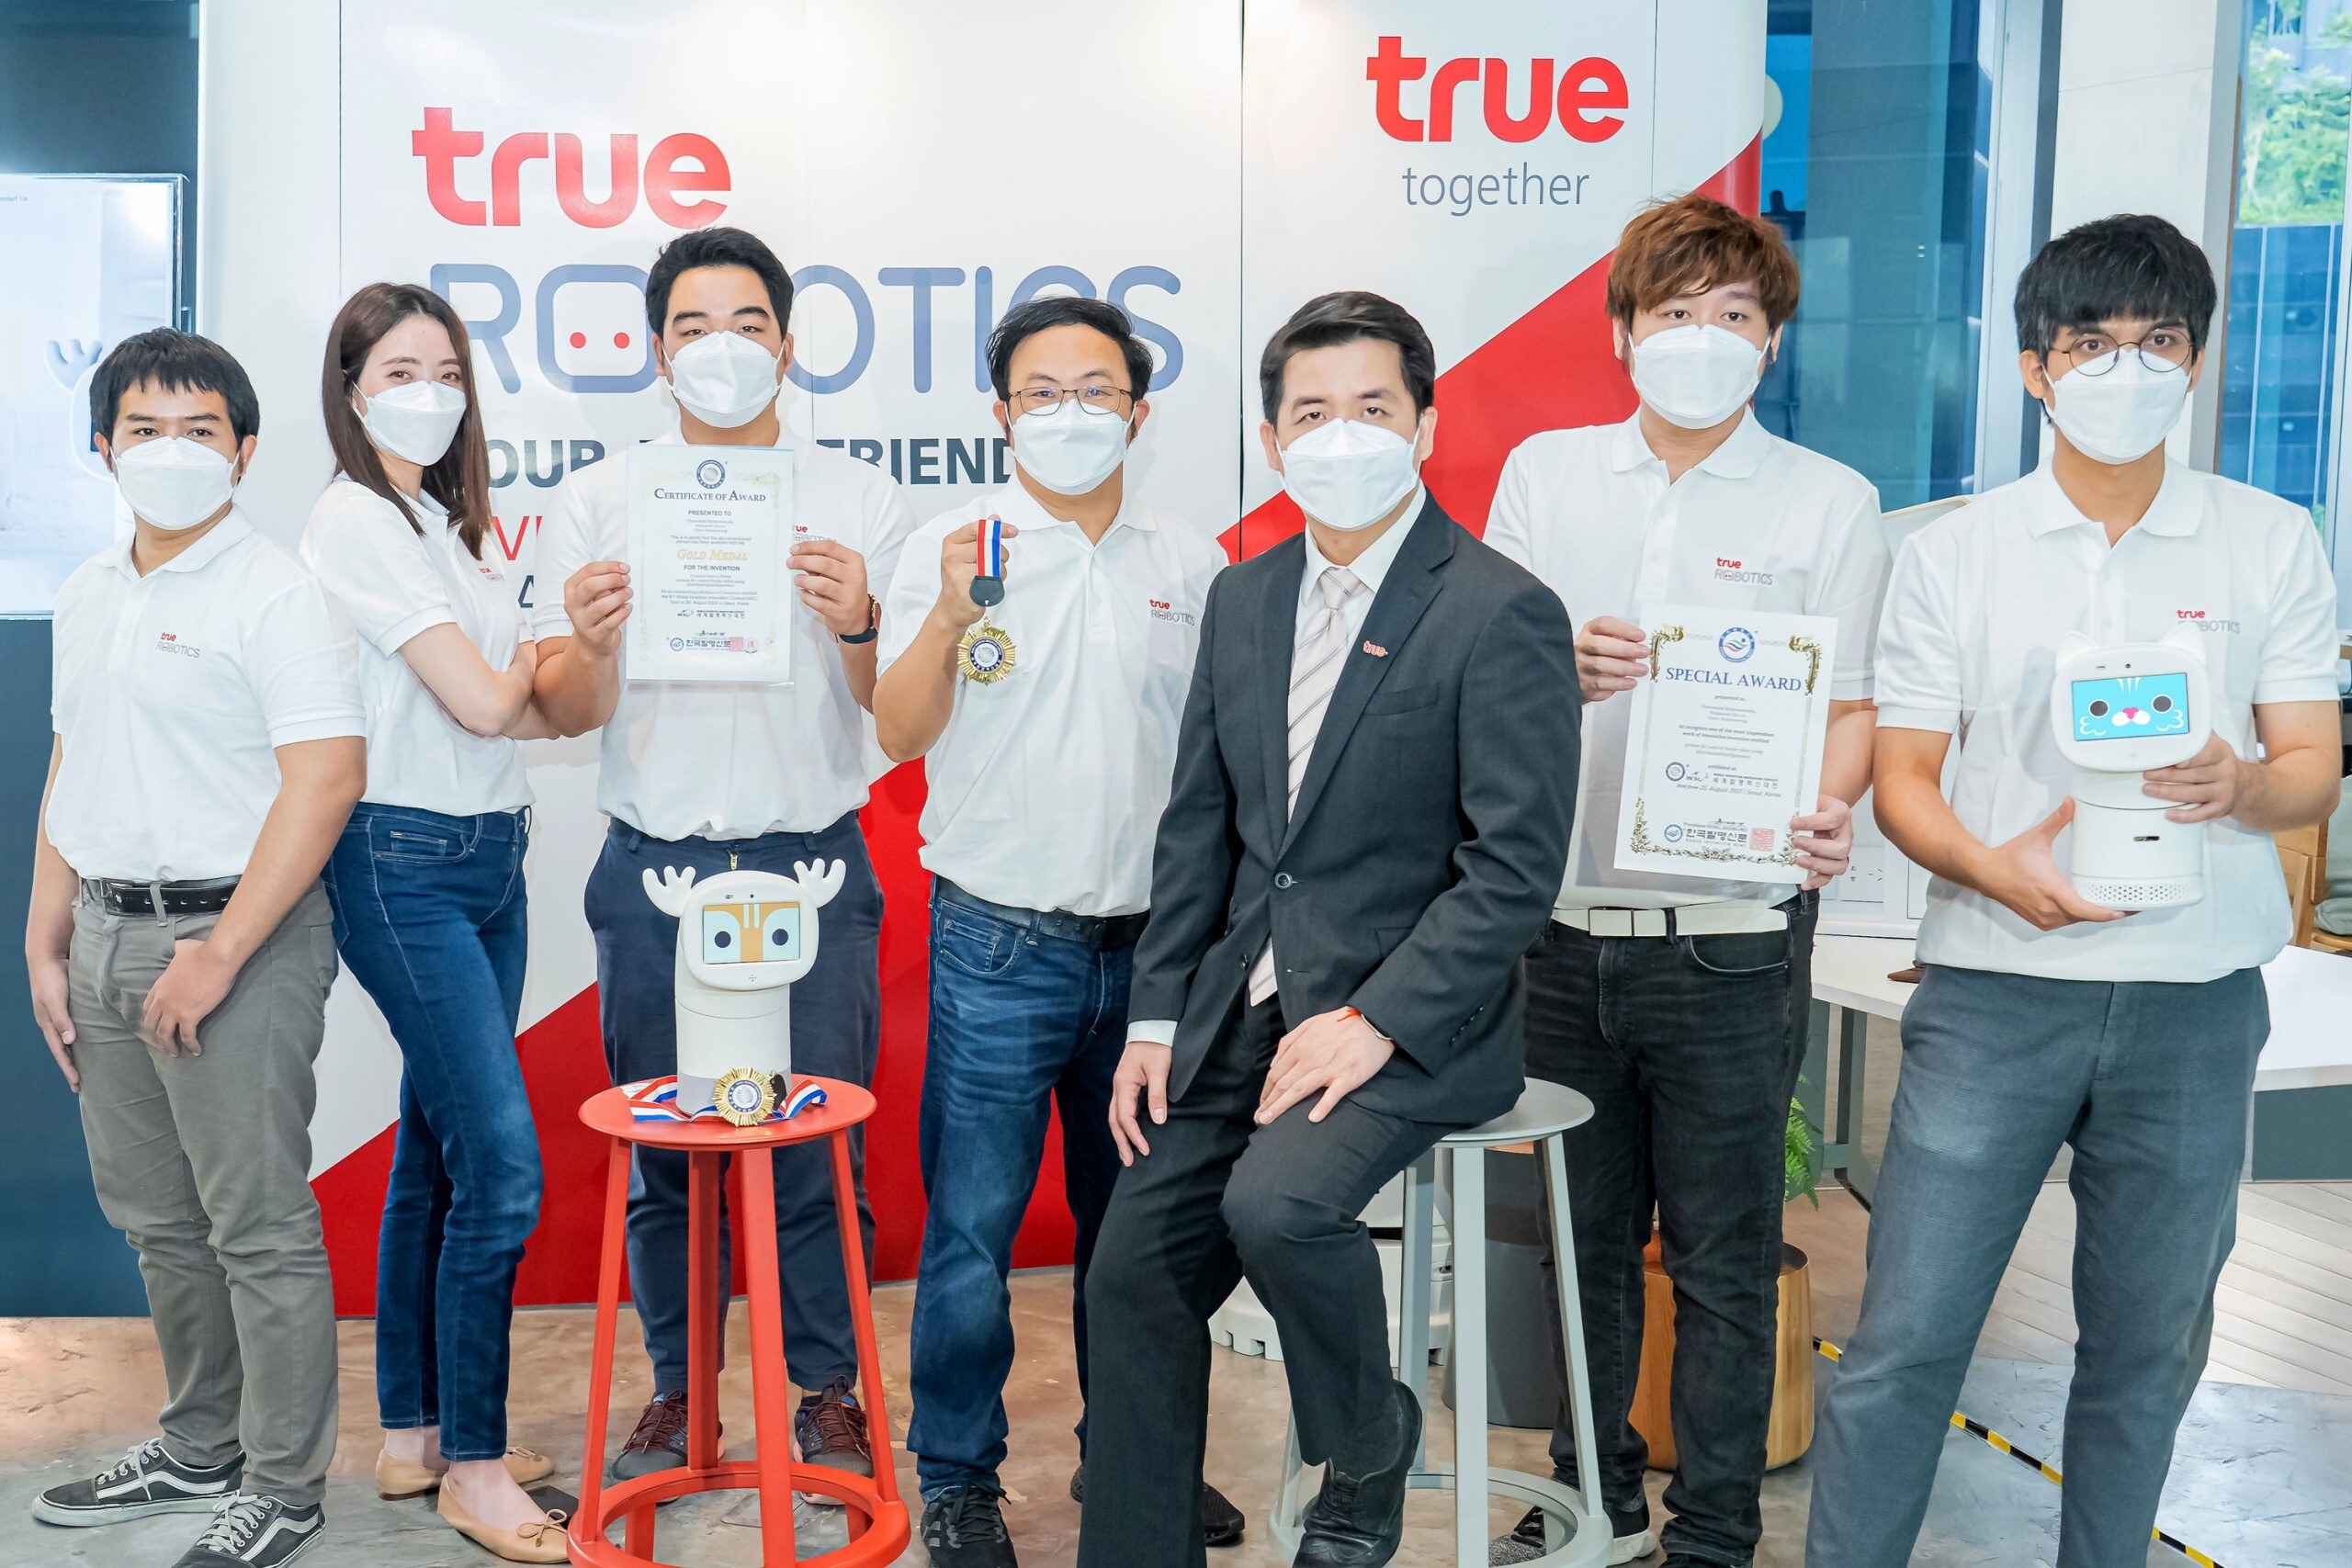 นวัตกรทรู นำหุ่นยนต์ไทย "Home Robot" กระหึ่มเวทีโลกอีกครั้ง คว้าแชมป์เหรียญทอง และอีกหนึ่งรางวัลพิเศษ ใน "World Invention Innovation Contest 2022"